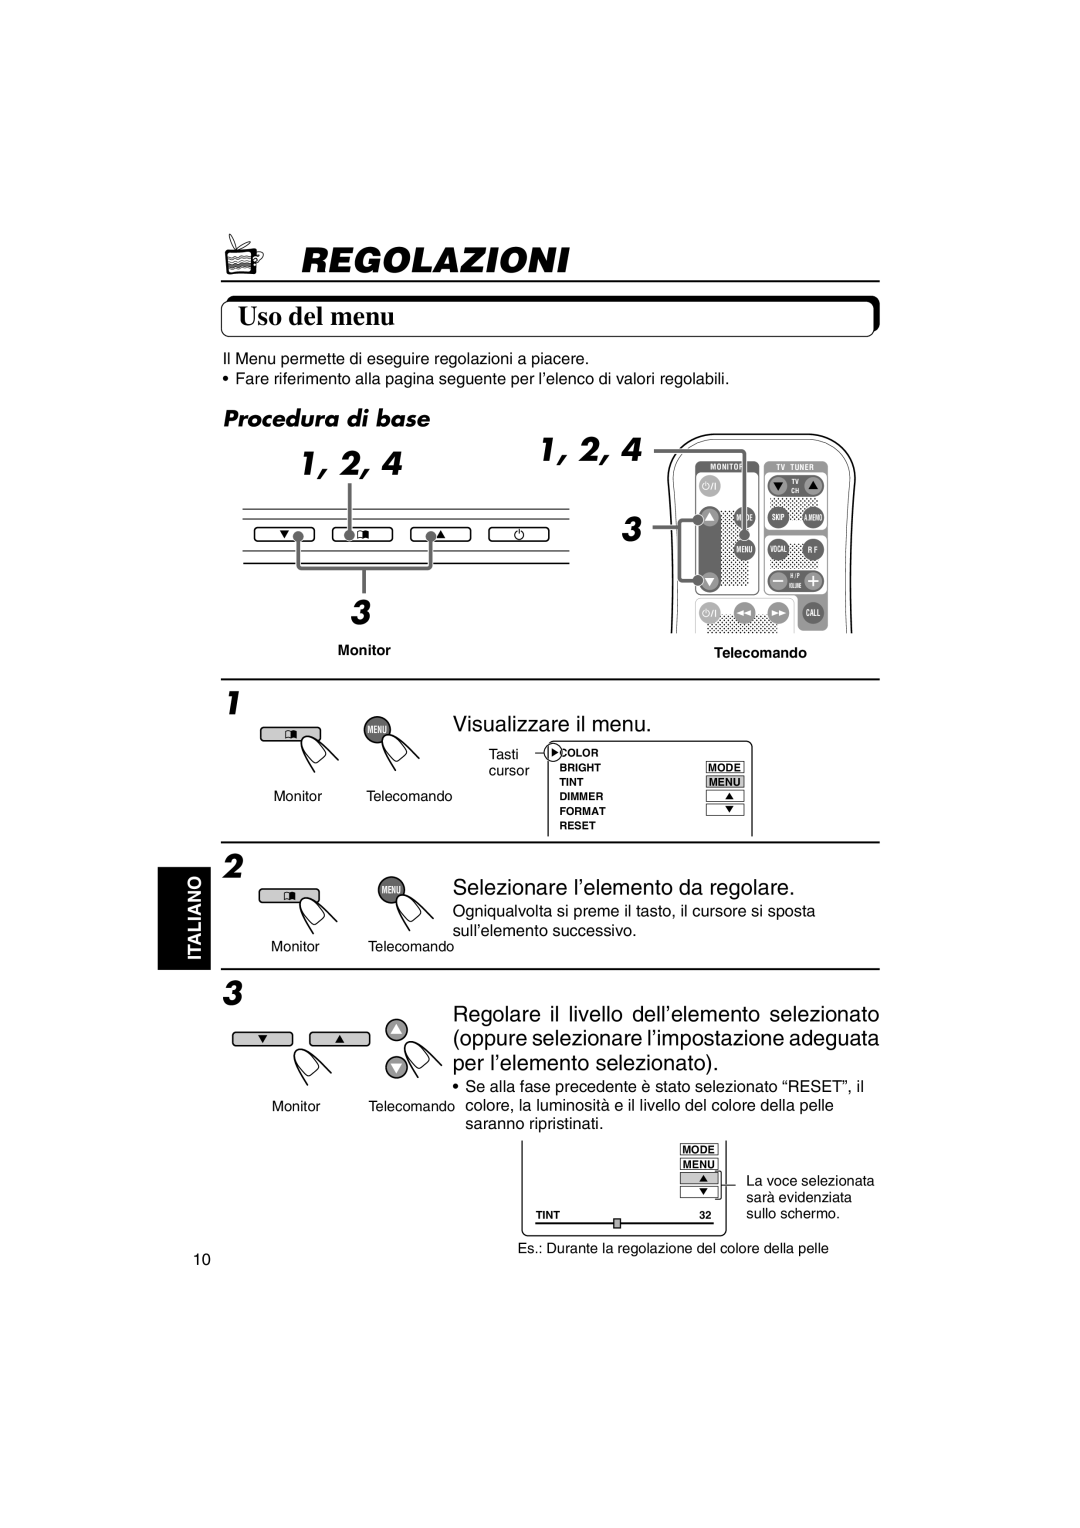 JVC KV-MH6500 manual Regolazioni, 1, 2, Uso del menu, Procedura di base, Visualizzare il menu, Italiano 